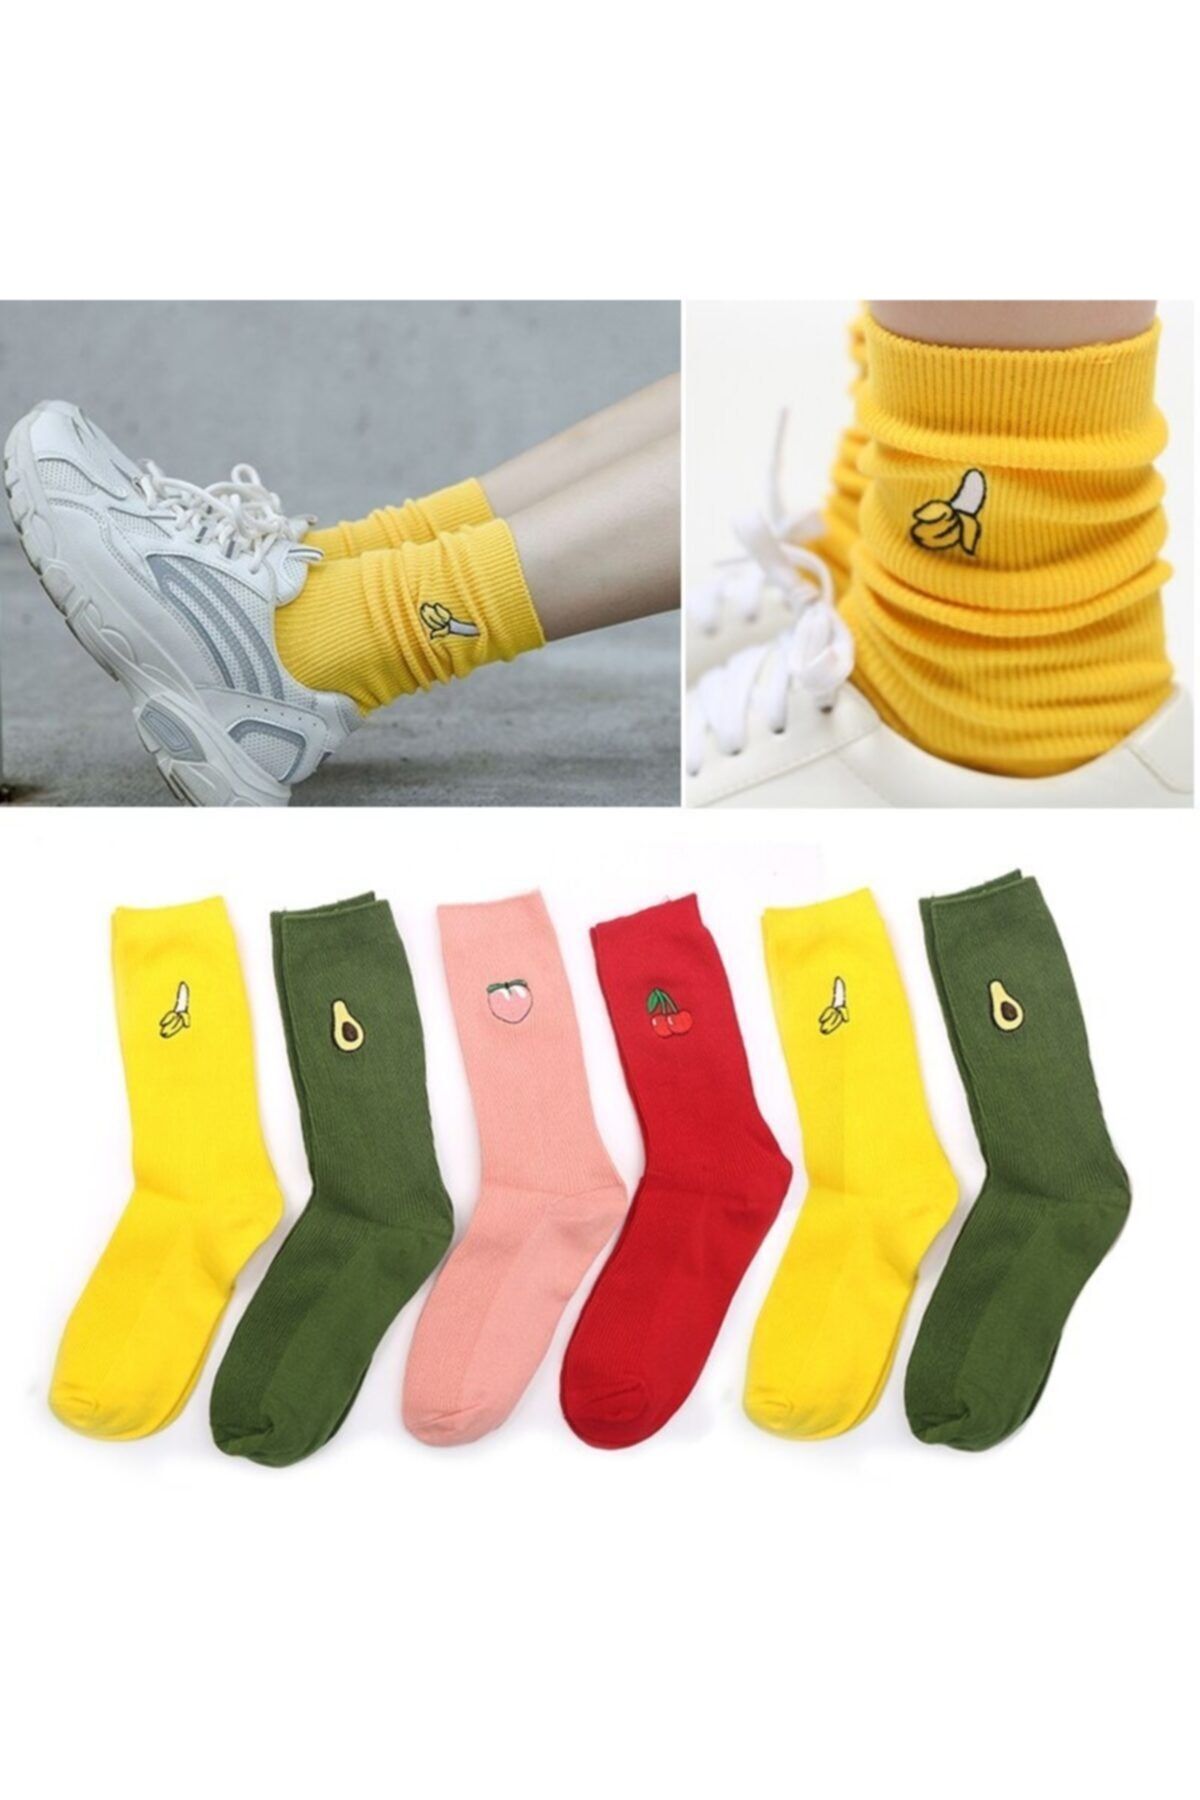 çorapmanya Kadın  Karışık Renkli Meyve Desenli Tenis Çorabı 6' lı